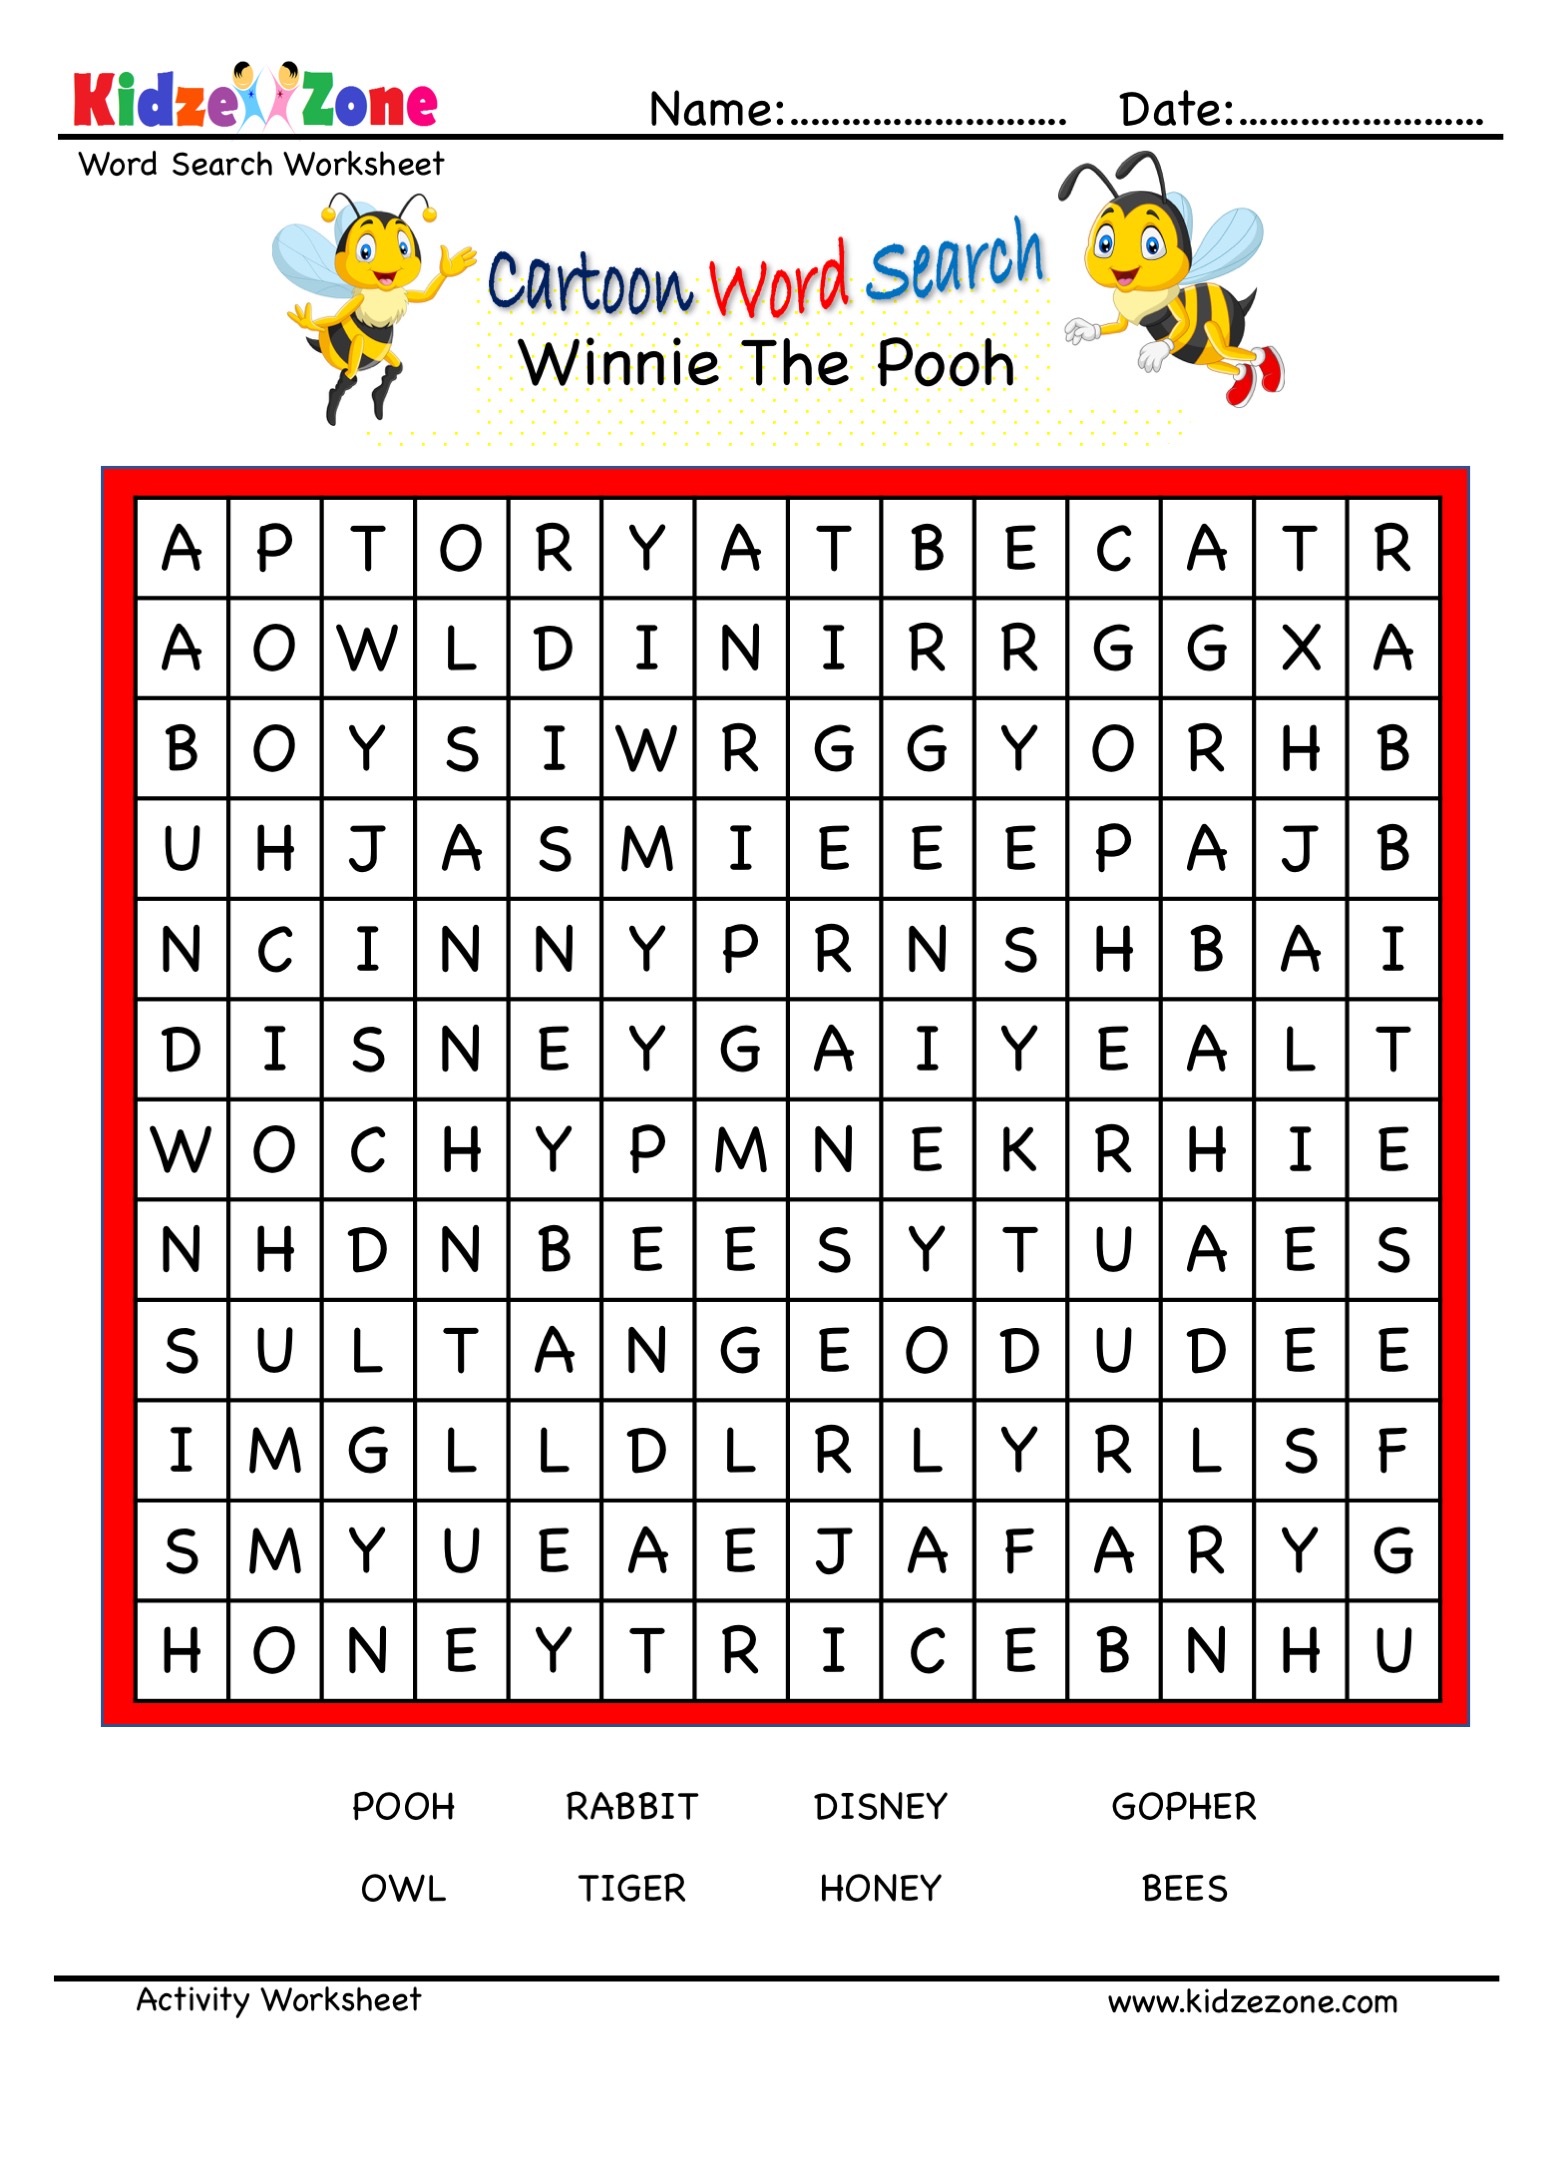 Winnie the Pooh Cartoon Word Search - KidzeZone